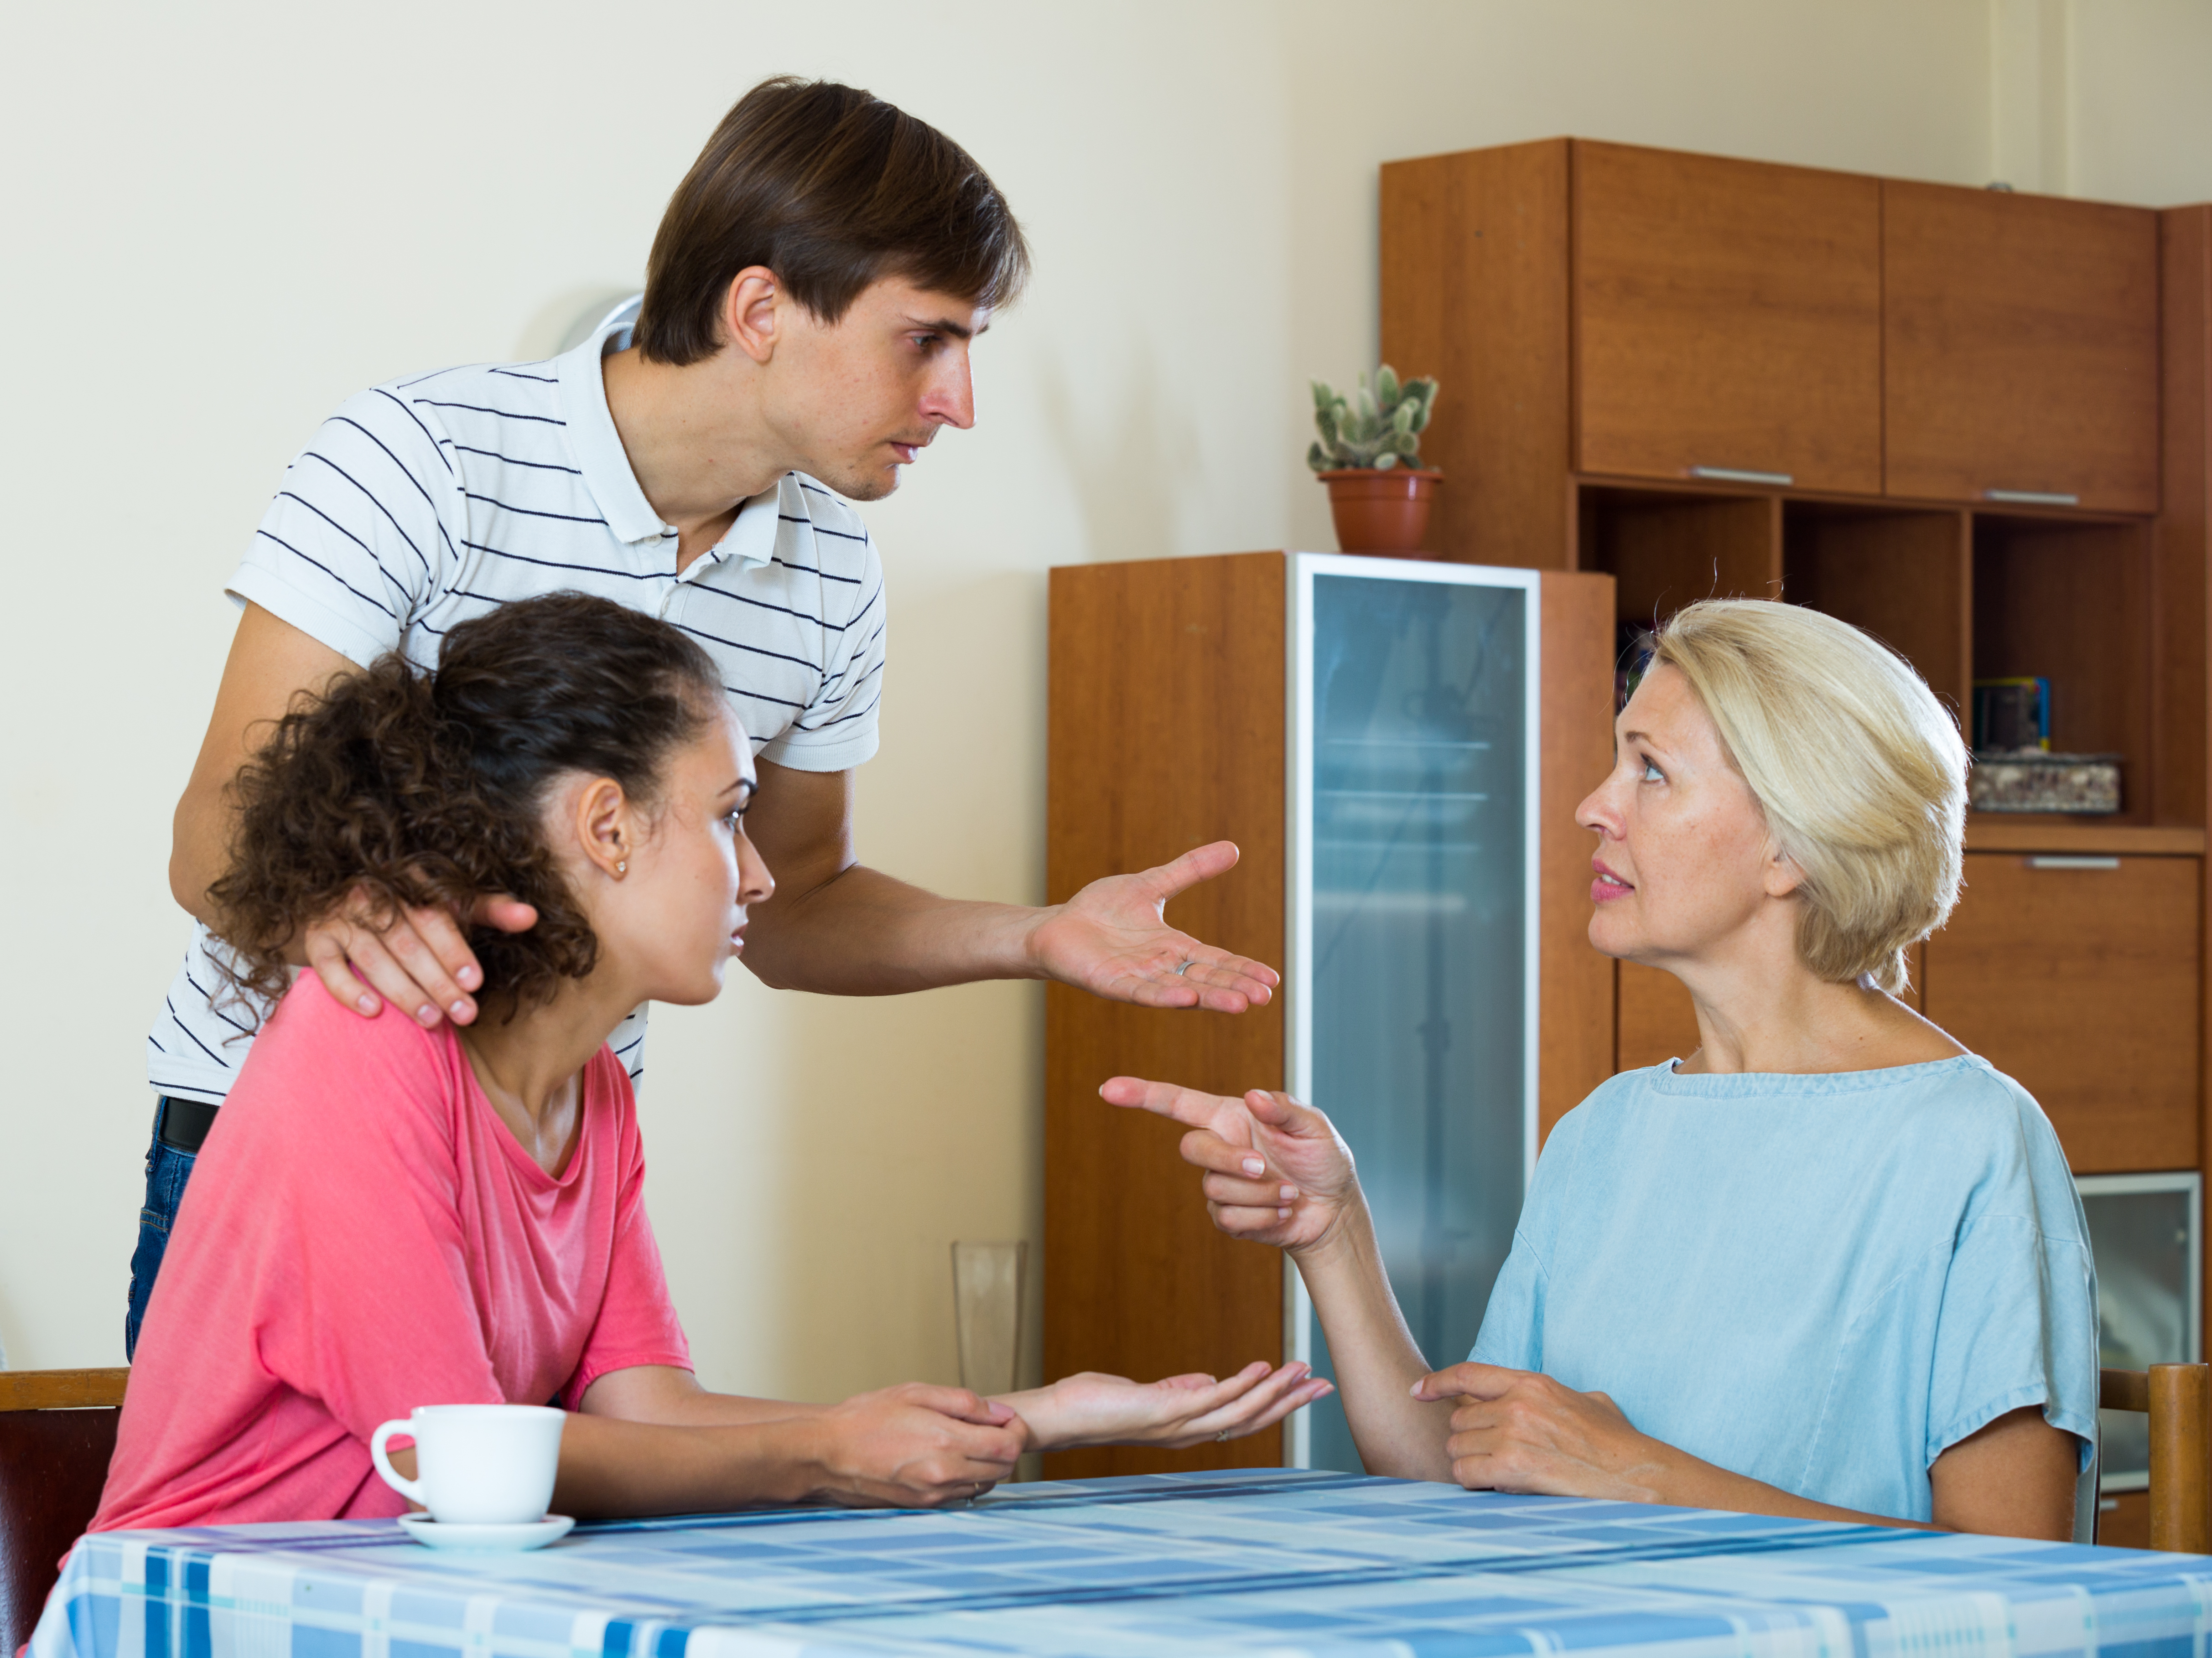 Una pareja joven hablando con una mujer mayor | Fuente: Shutterstock